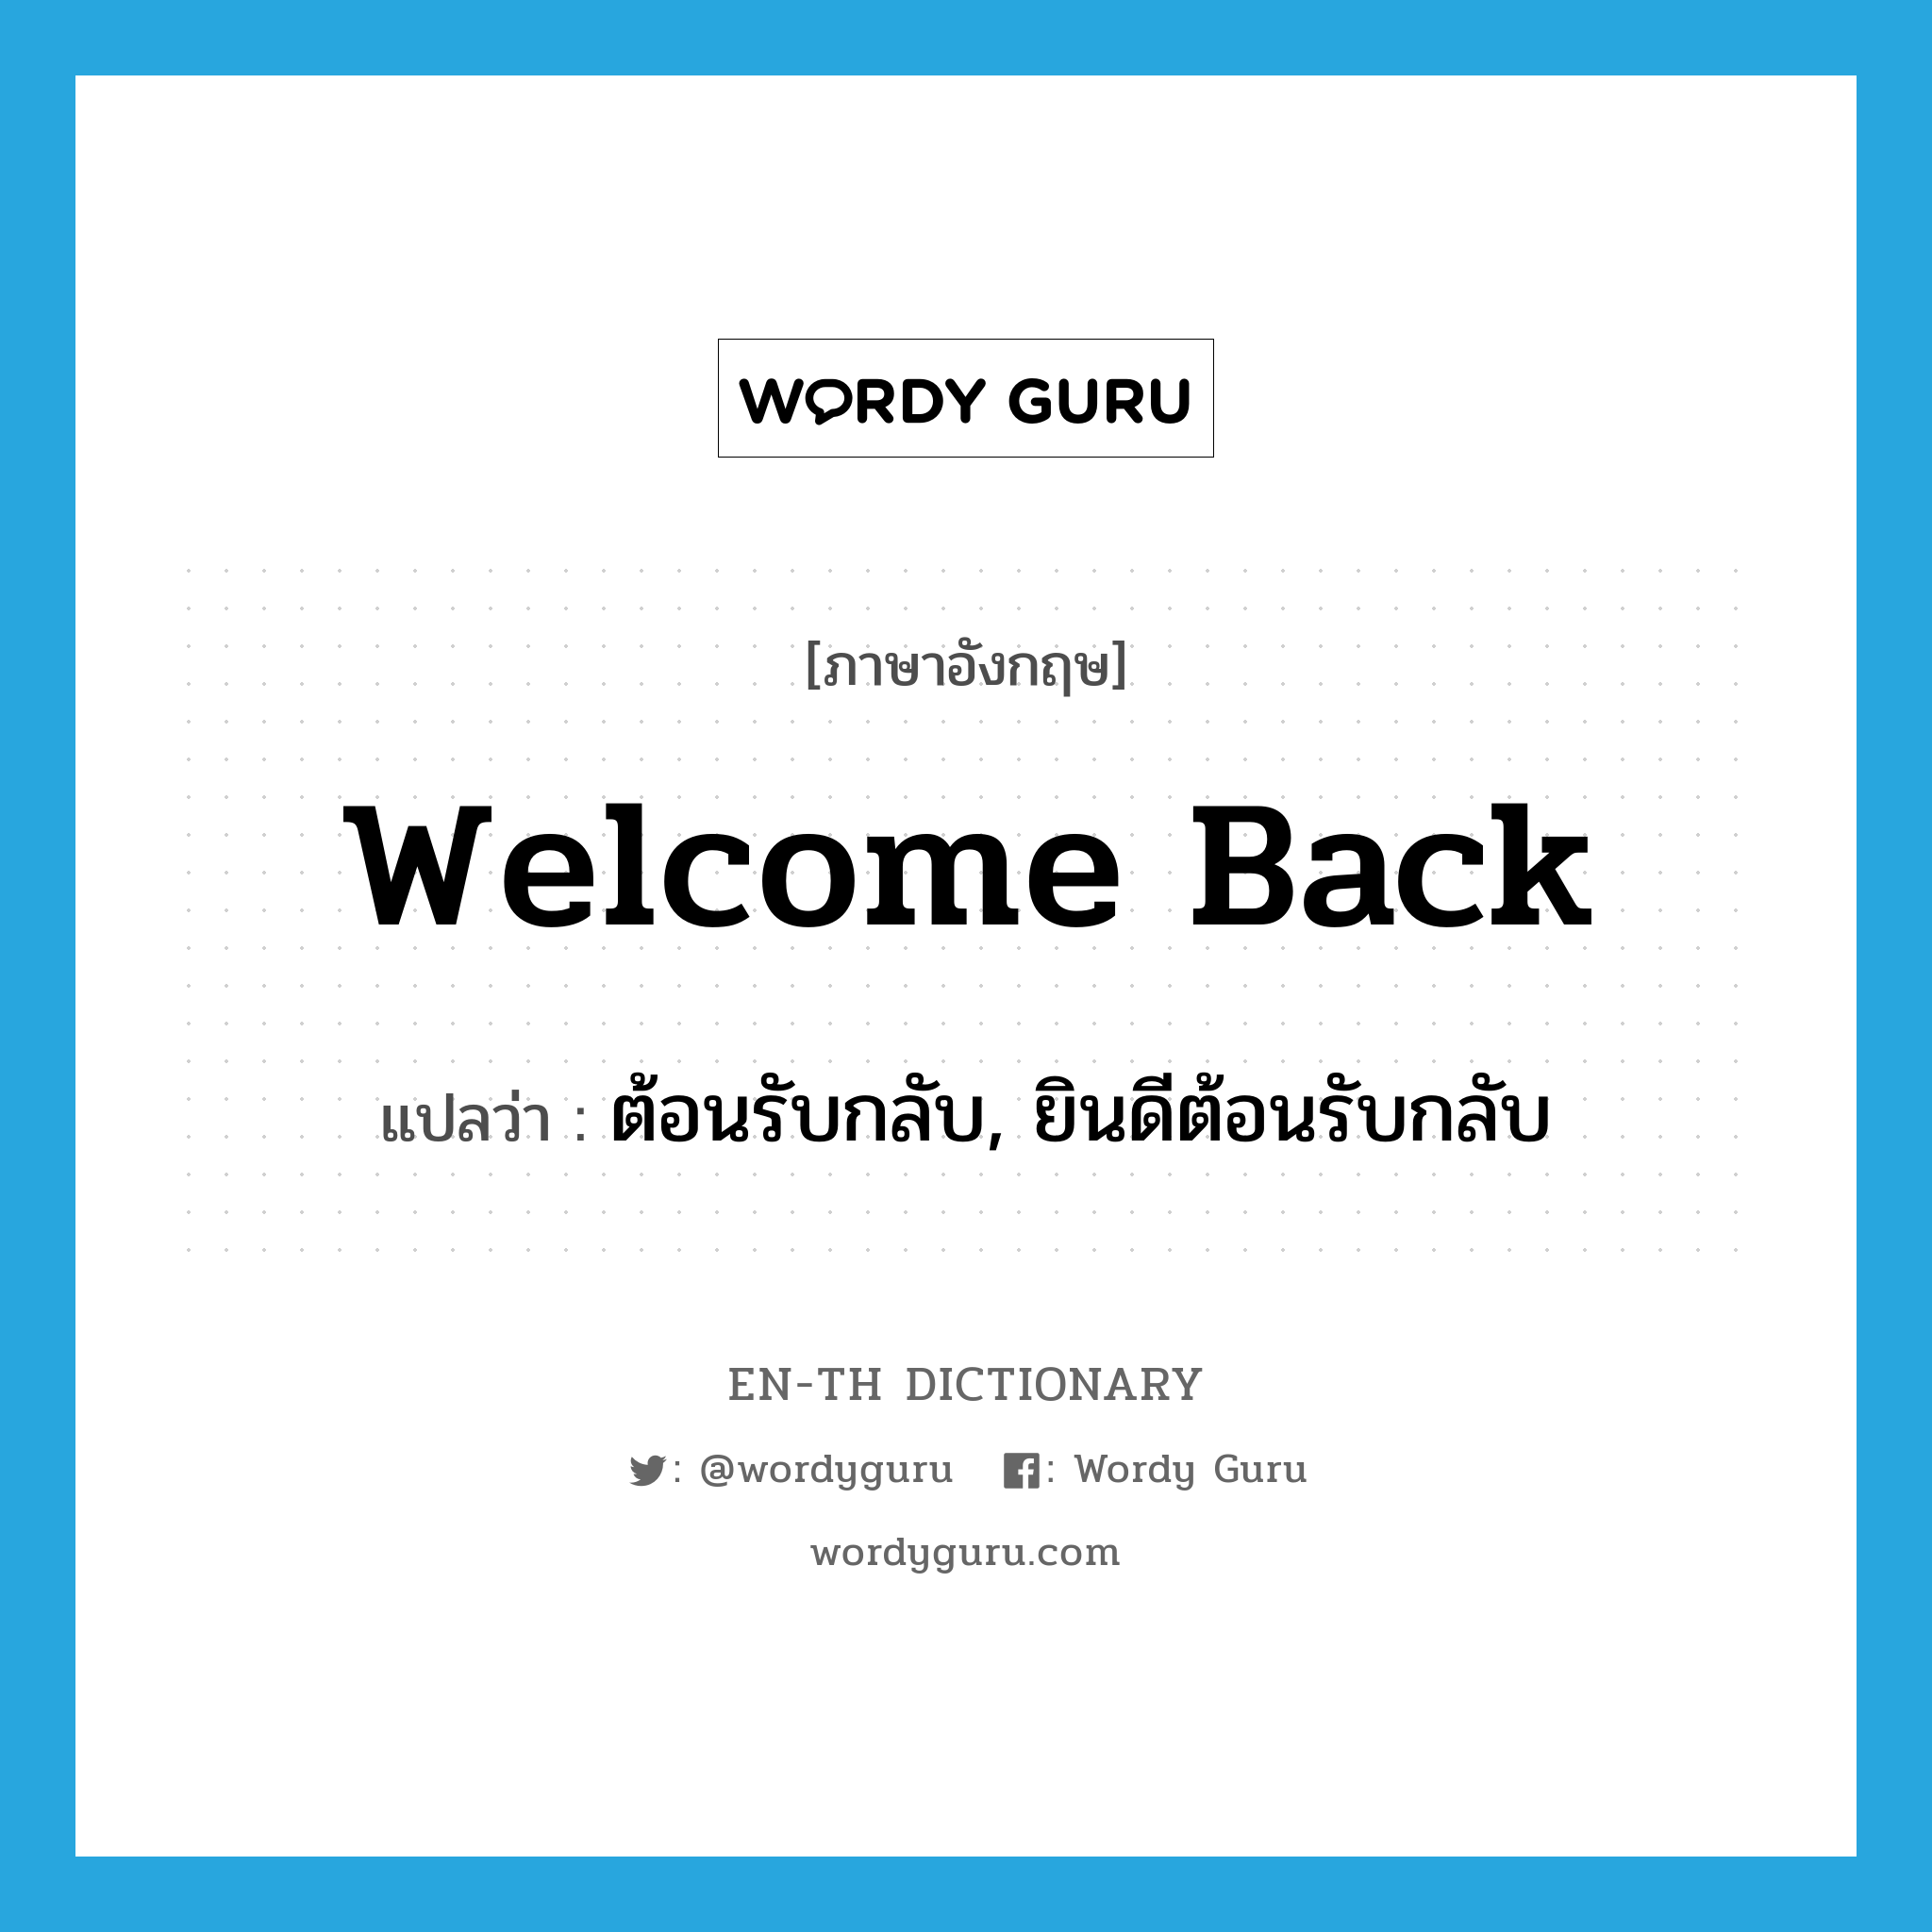 ต้อนรับกลับ, ยินดีต้อนรับกลับ ภาษาอังกฤษ?, คำศัพท์ภาษาอังกฤษ ต้อนรับกลับ, ยินดีต้อนรับกลับ แปลว่า welcome back ประเภท PHRV หมวด PHRV